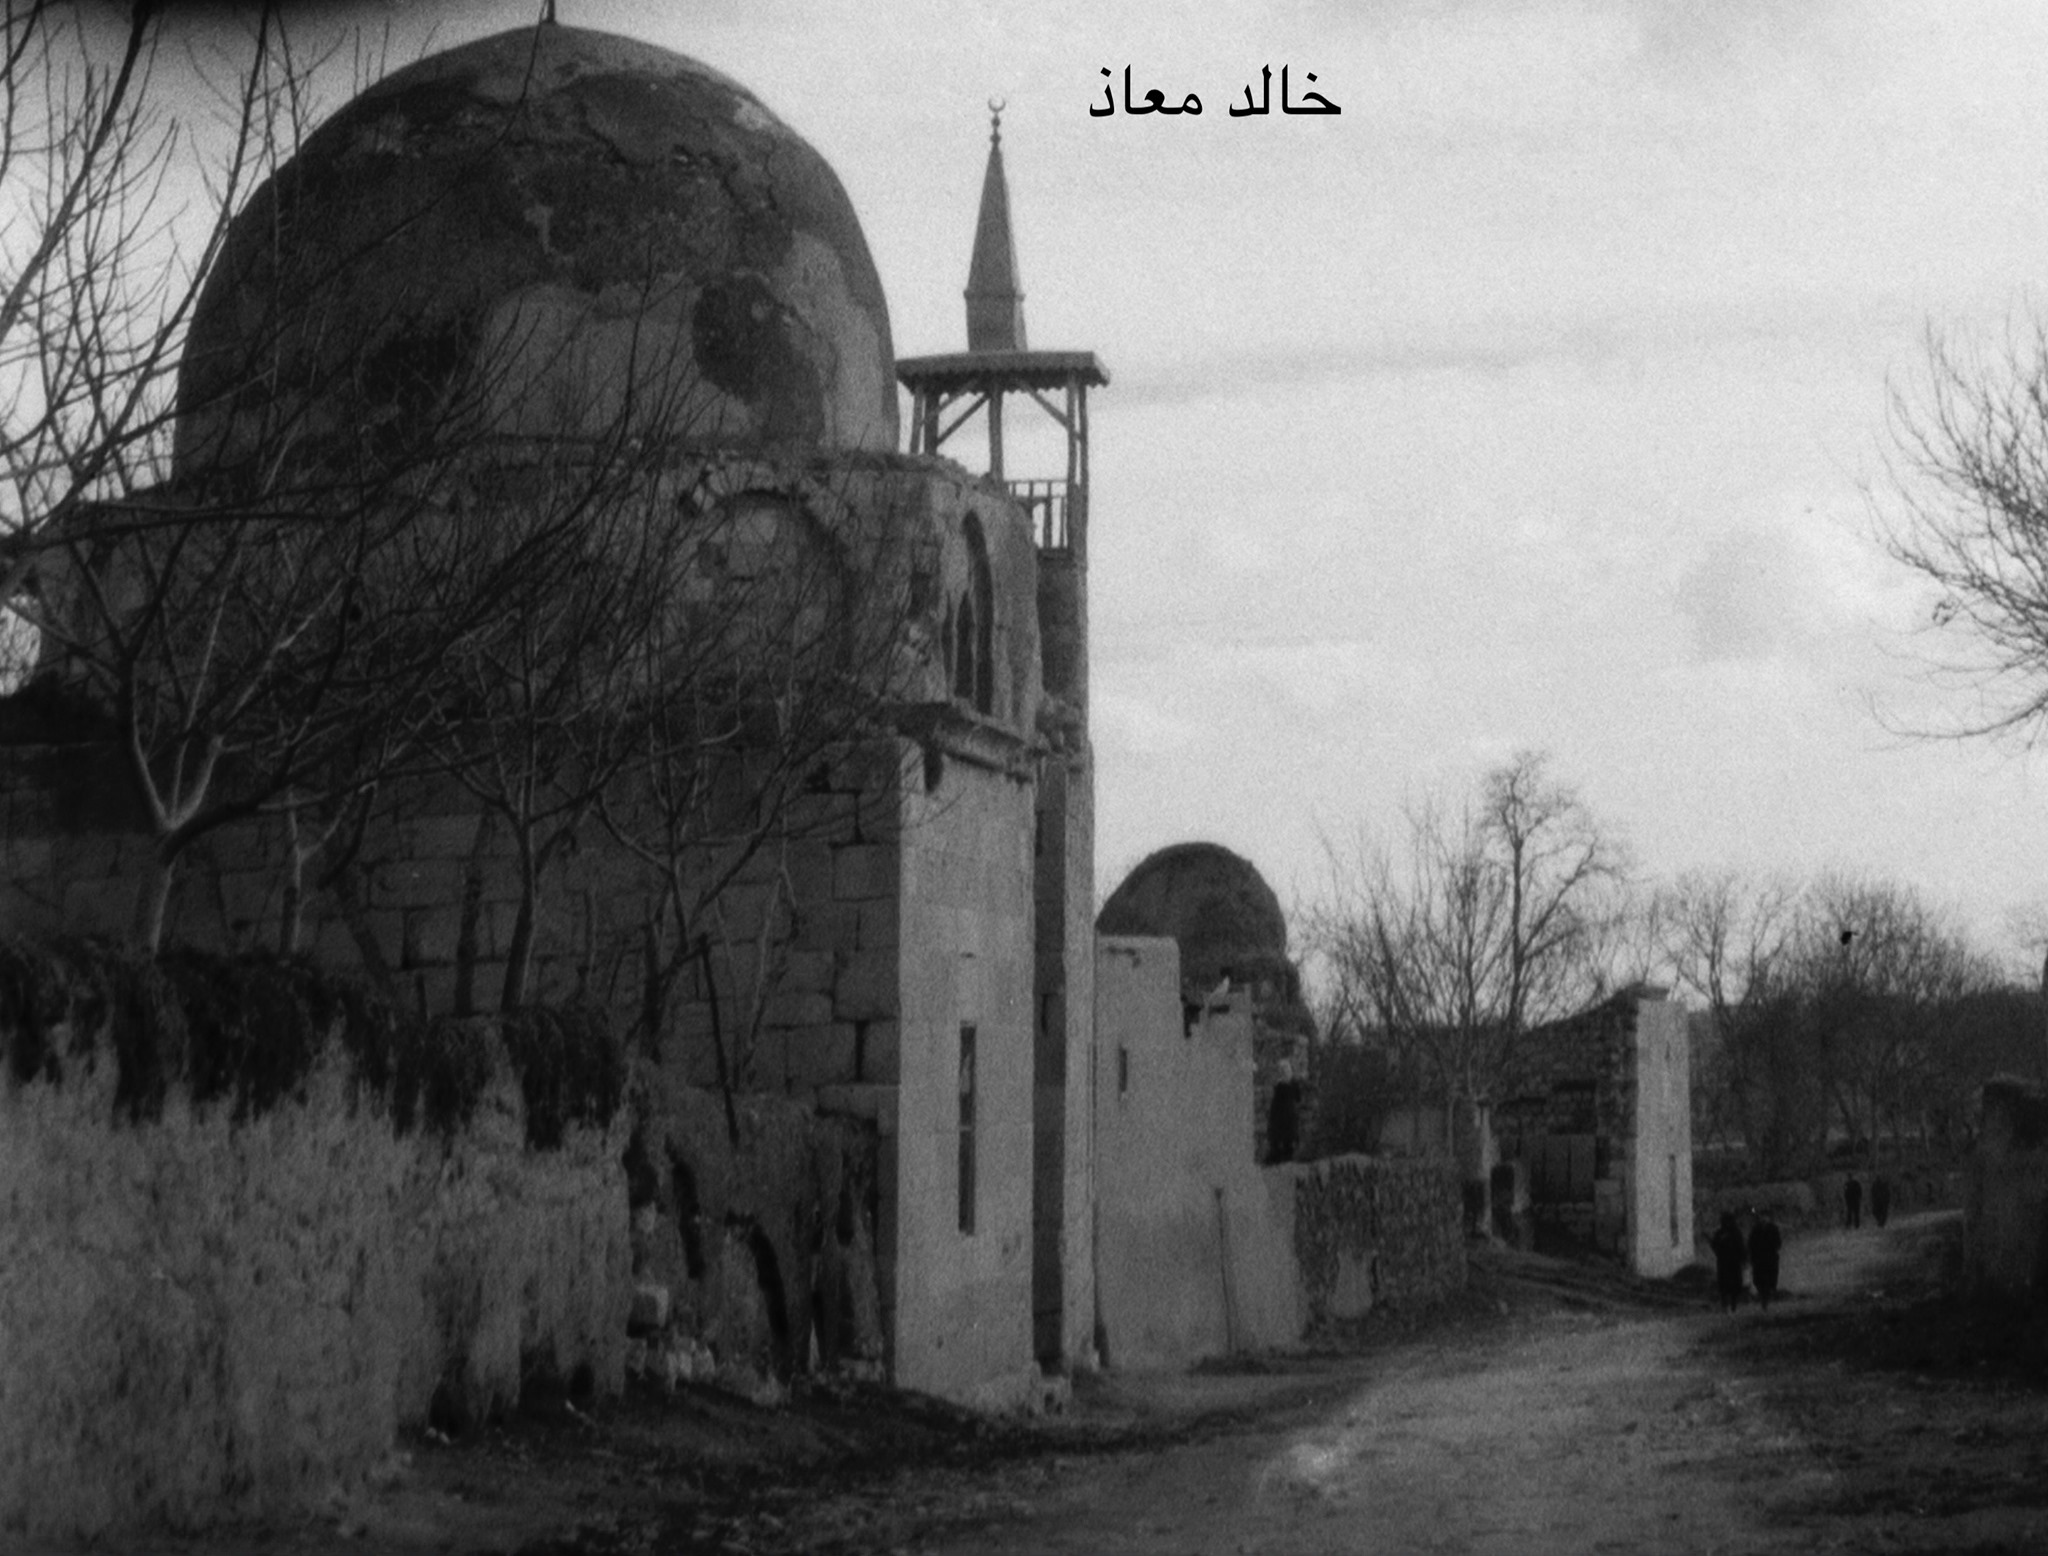 التاريخ السوري المعاصر - التربة الحافظية في حي المزرعة في خمسينيات القرن العشرين